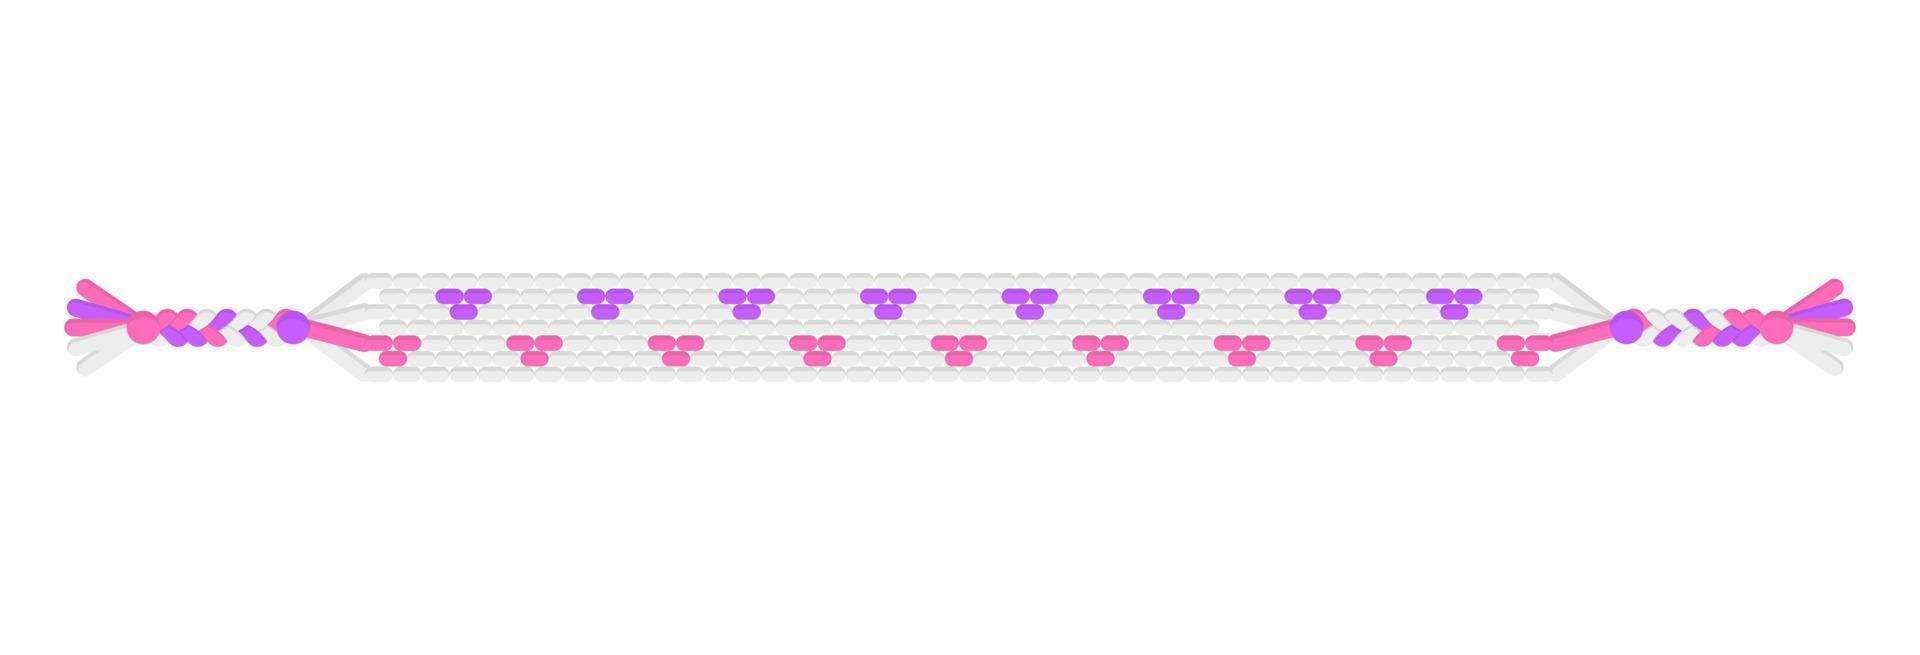 vector boho amo pulseira de amizade hippie artesanal de fios brancos, violetas e rosa.